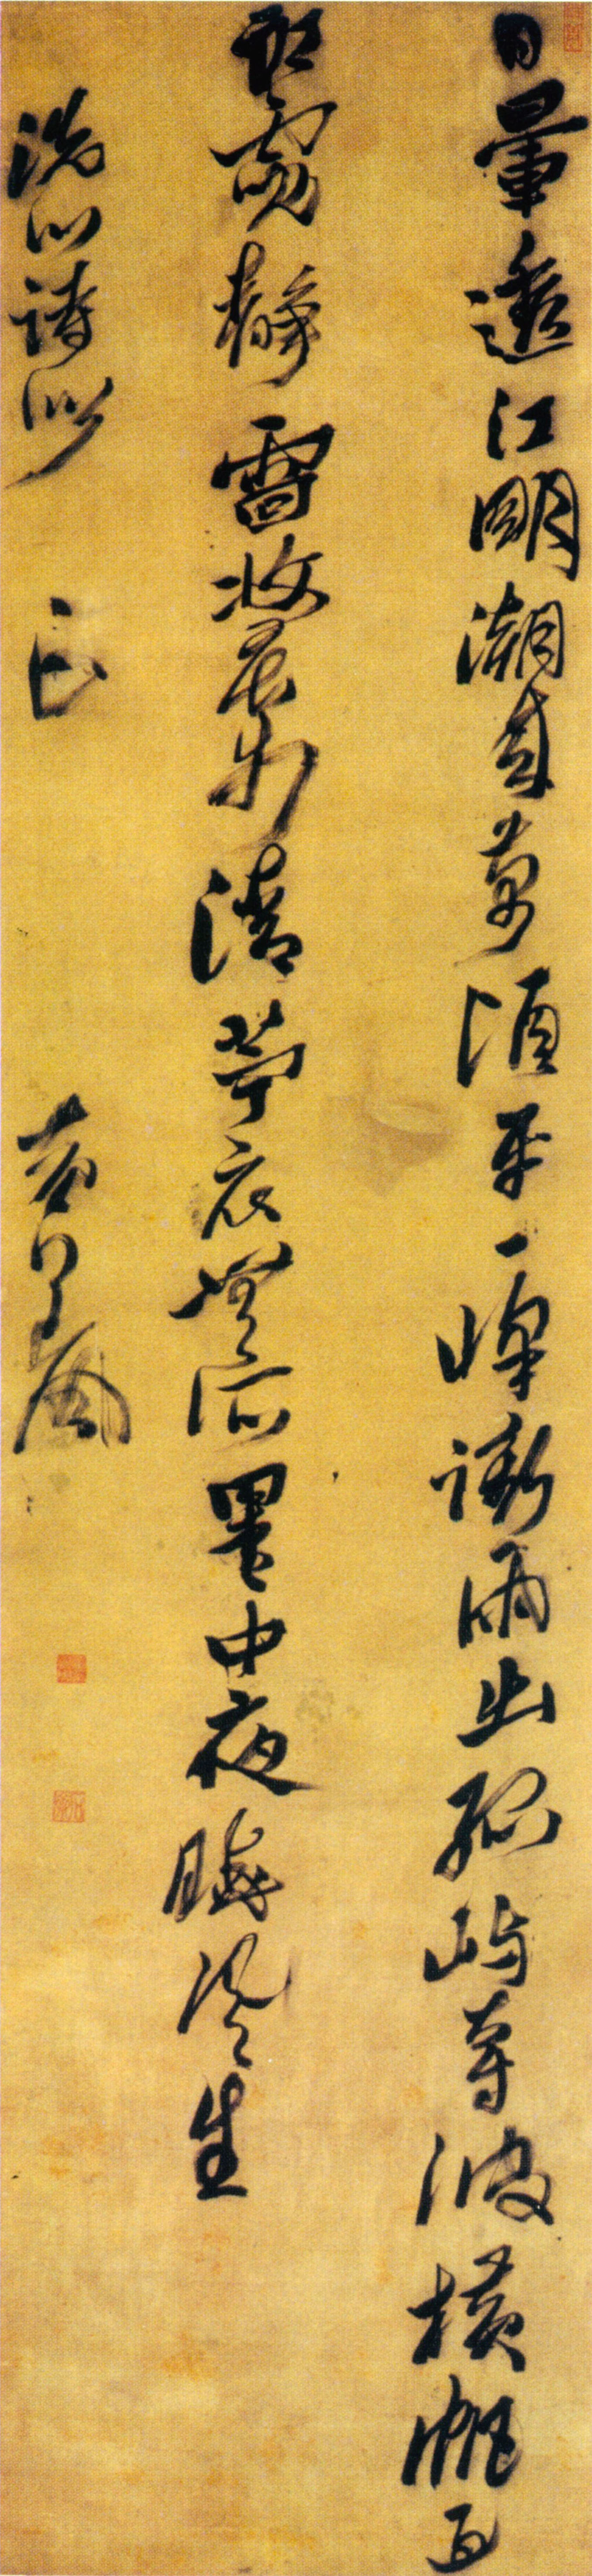 黄道周行书《洗心五言诗轴 》-上海博物馆藏(图1)